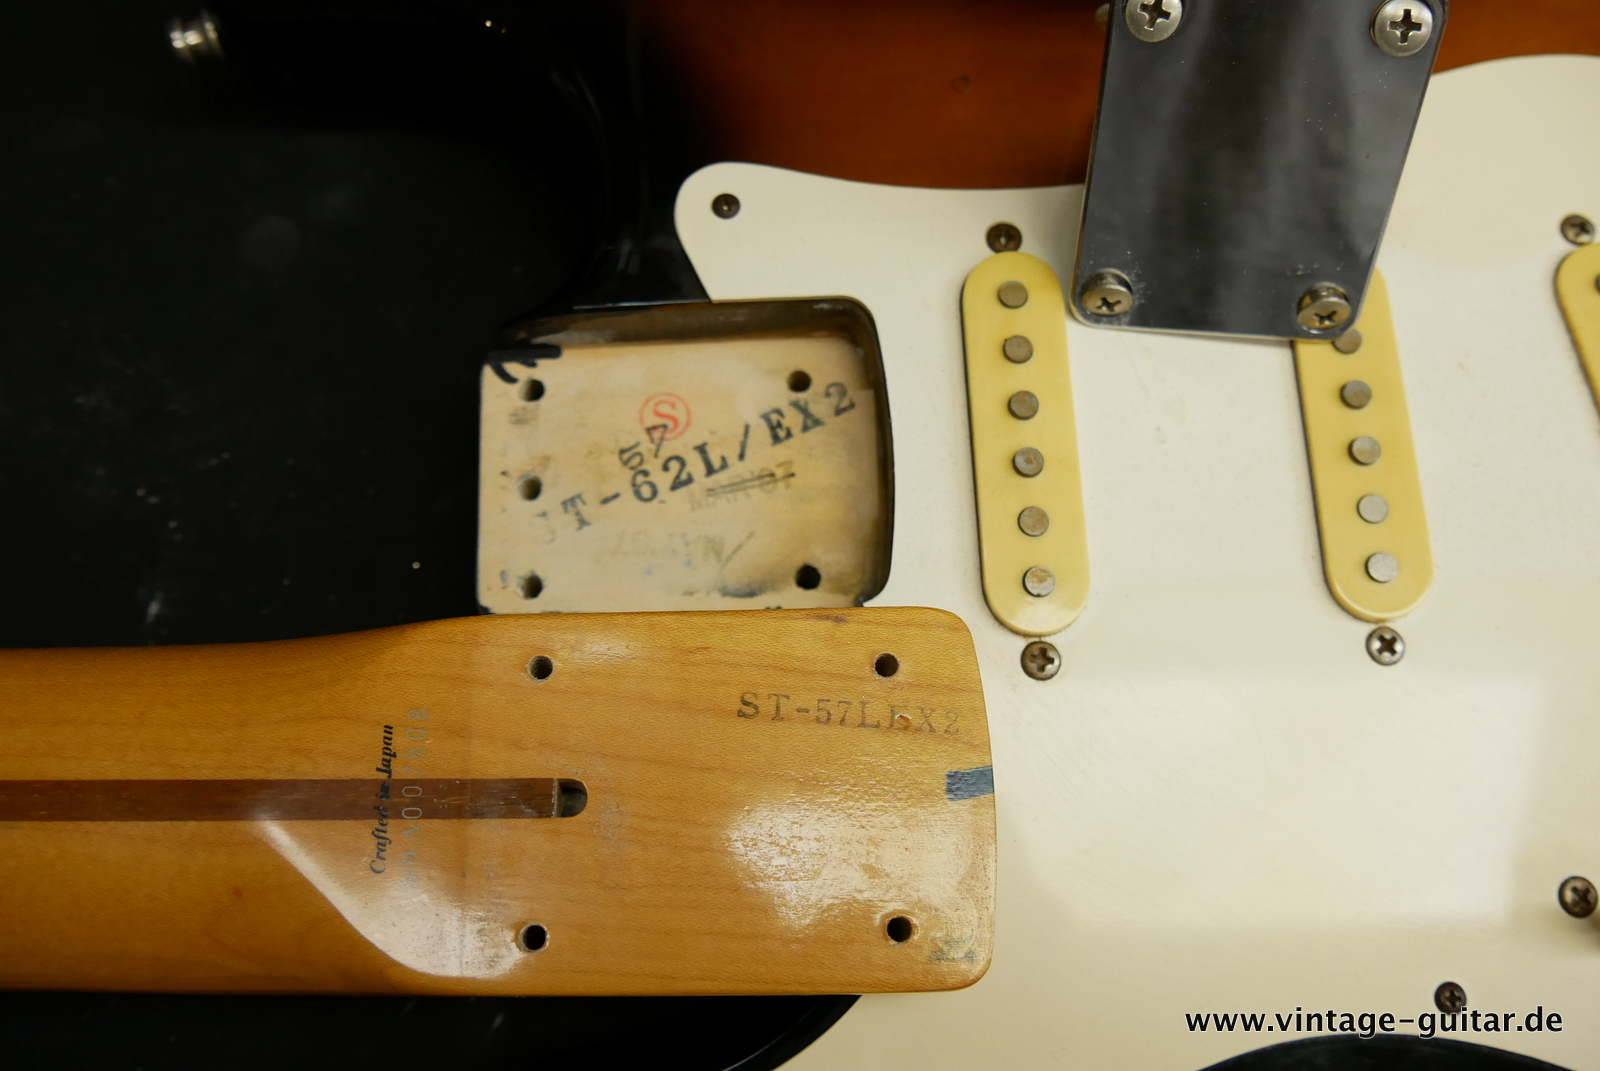 img/vintage/5471/Fender-Stratocaster-CIJ-ST-57-1996-sunburst-016.JPG